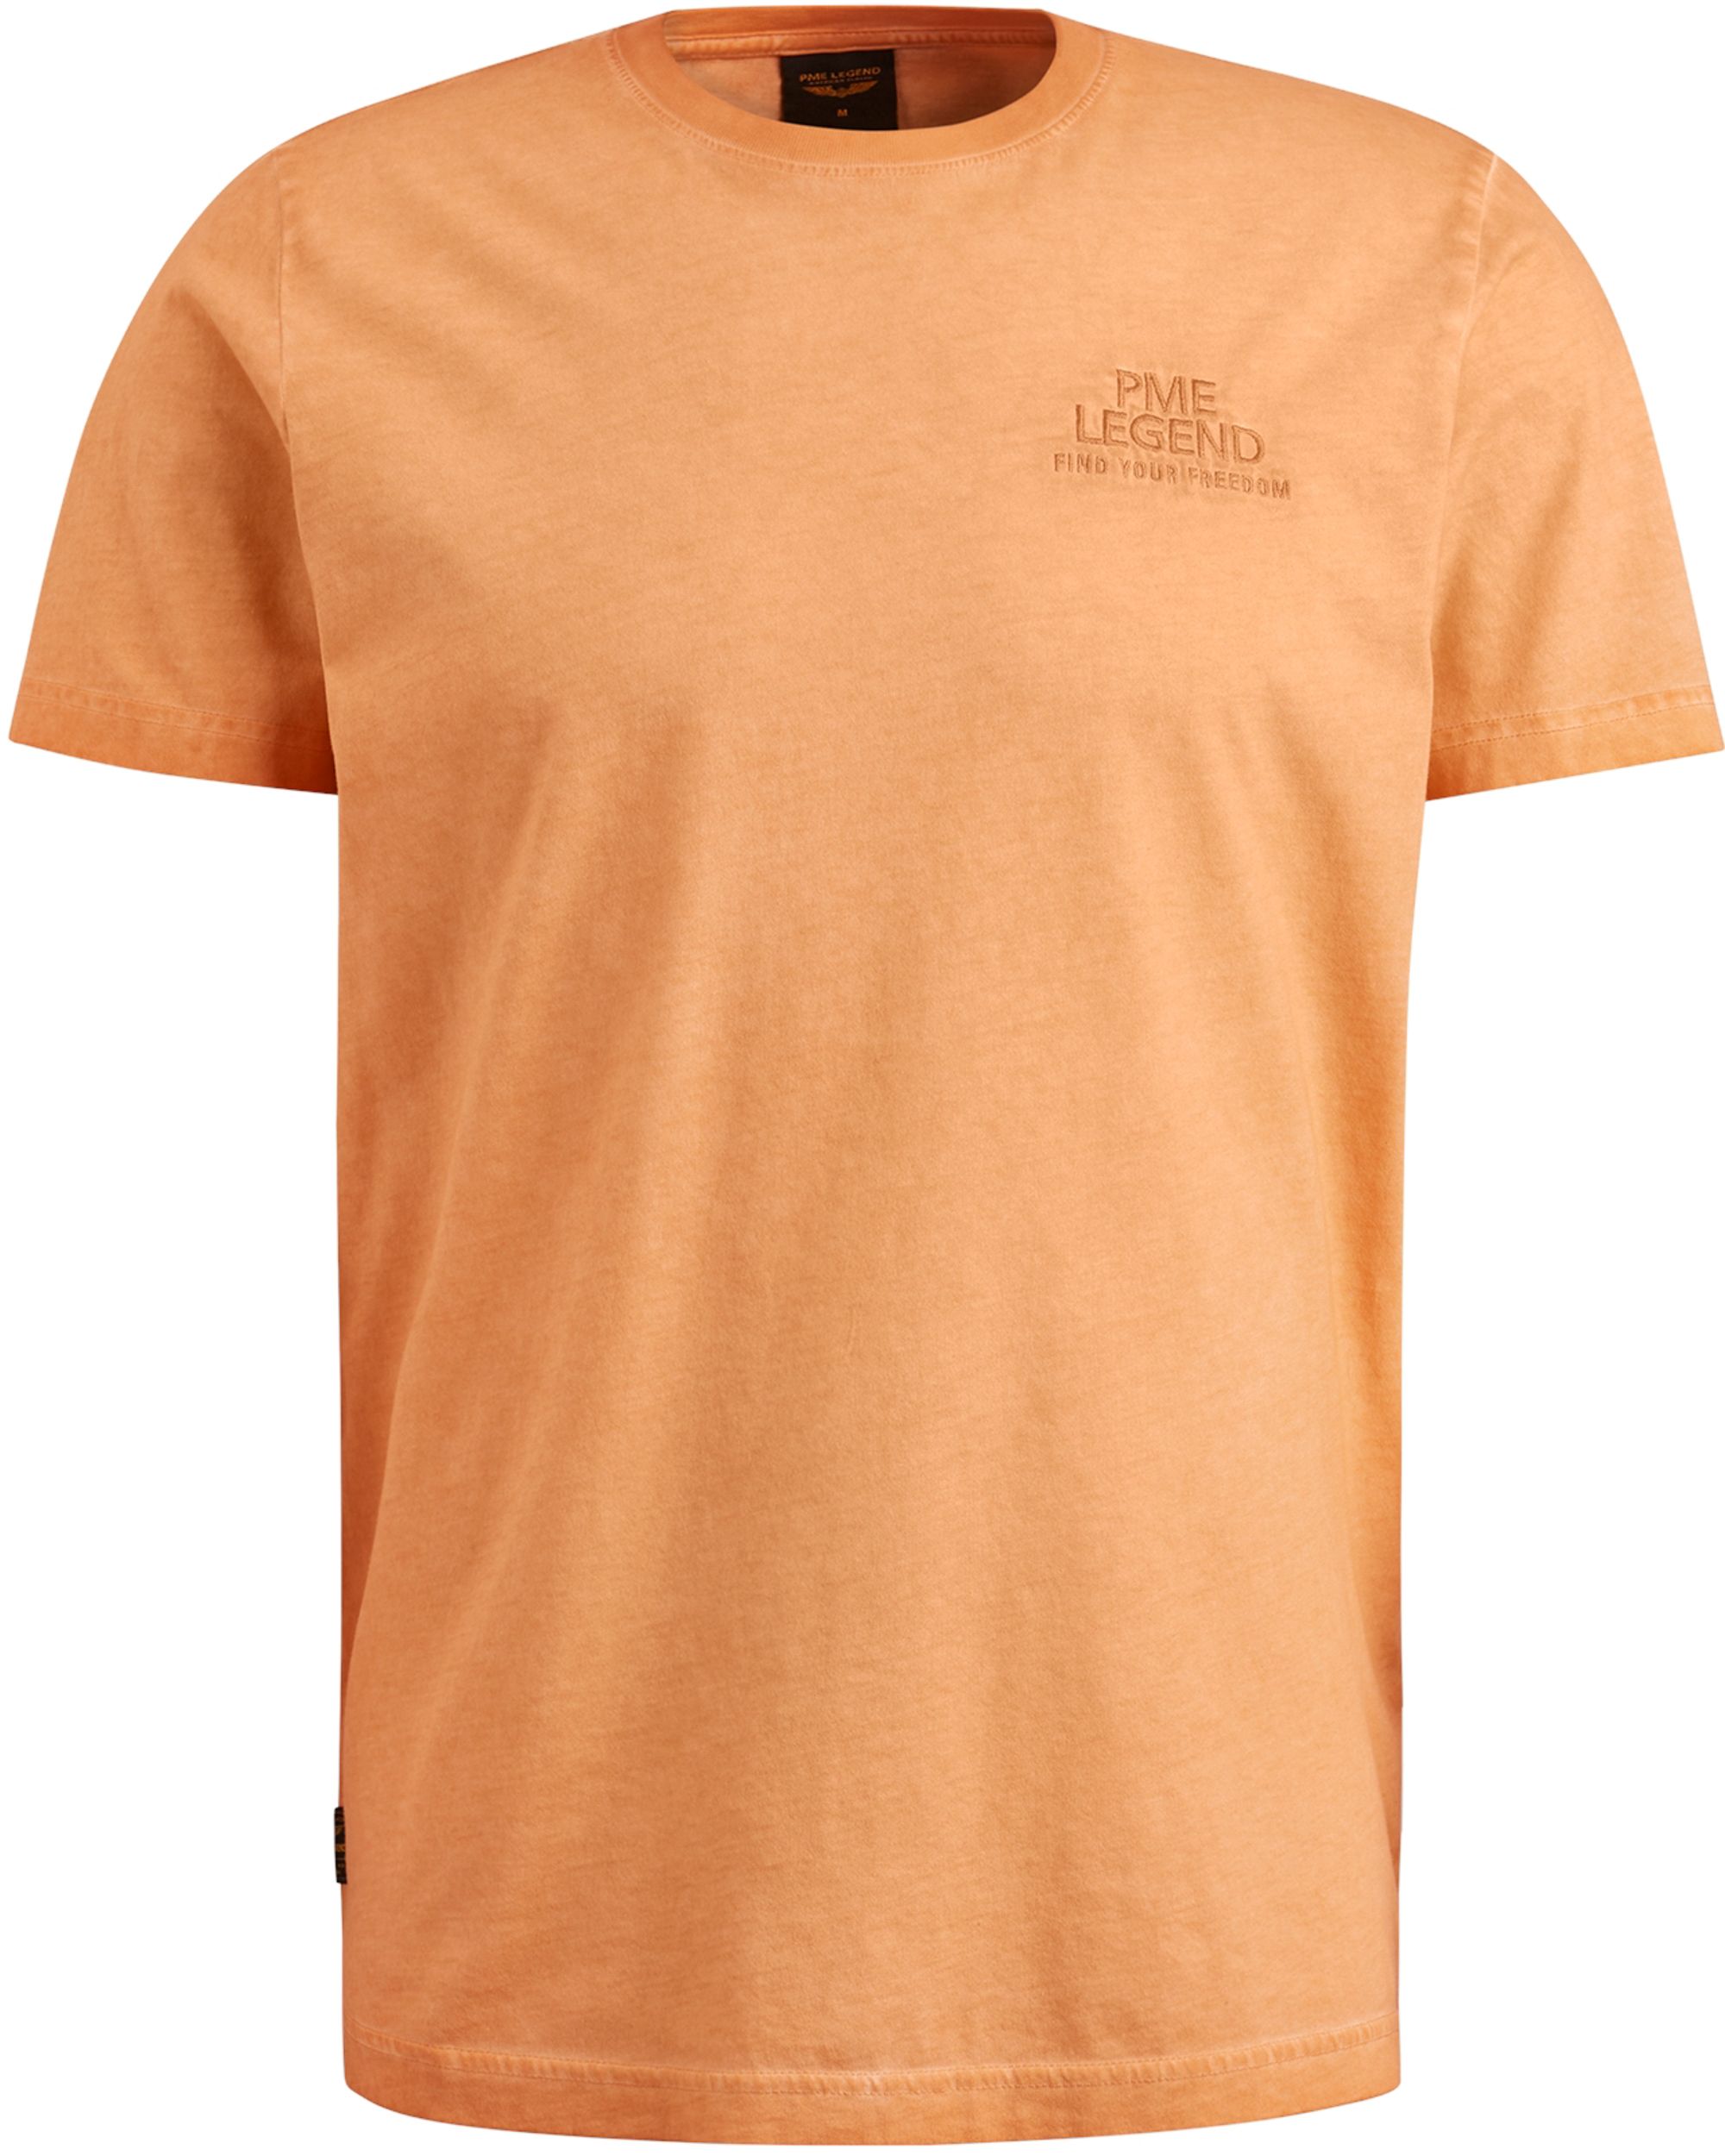 PME Legend T-shirt KM Oranje 093647-001-L